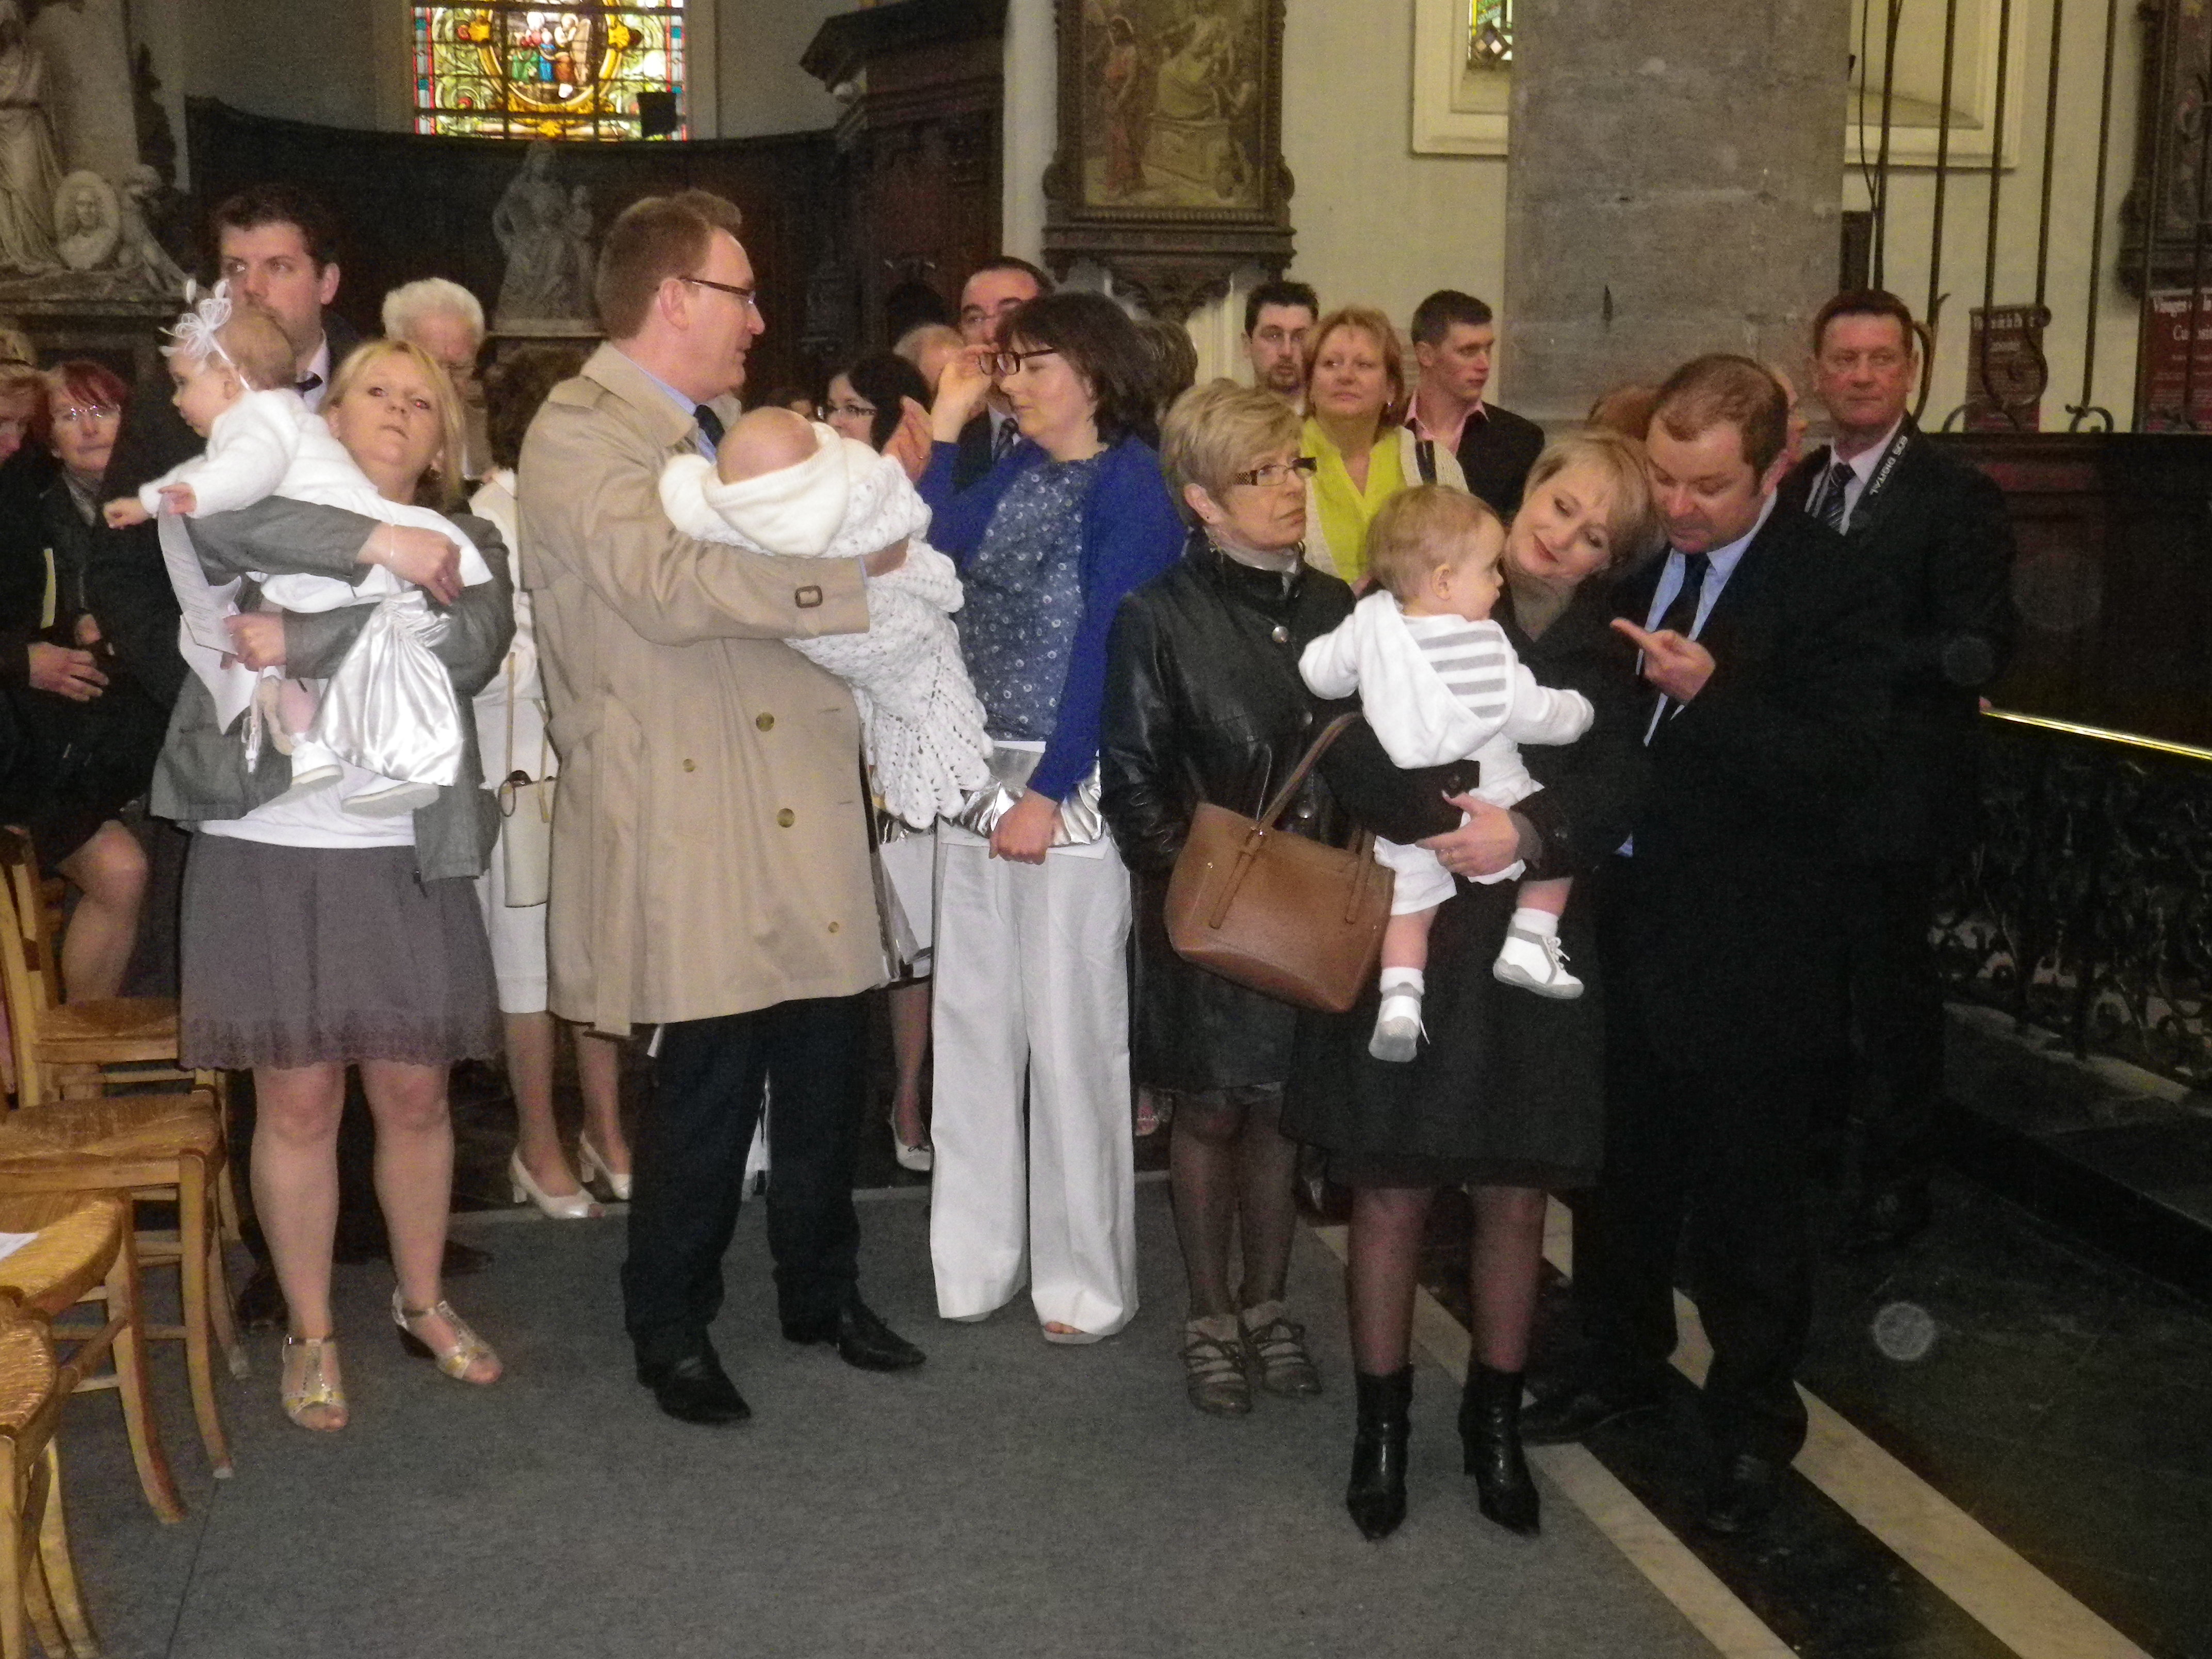 A l'issue de la messe, 4 bébés ont été baptisés, accompagnés de leurs parents, parrains et marraines. Quelle plus belle fête que Pâques pour célébrer des baptêmes!